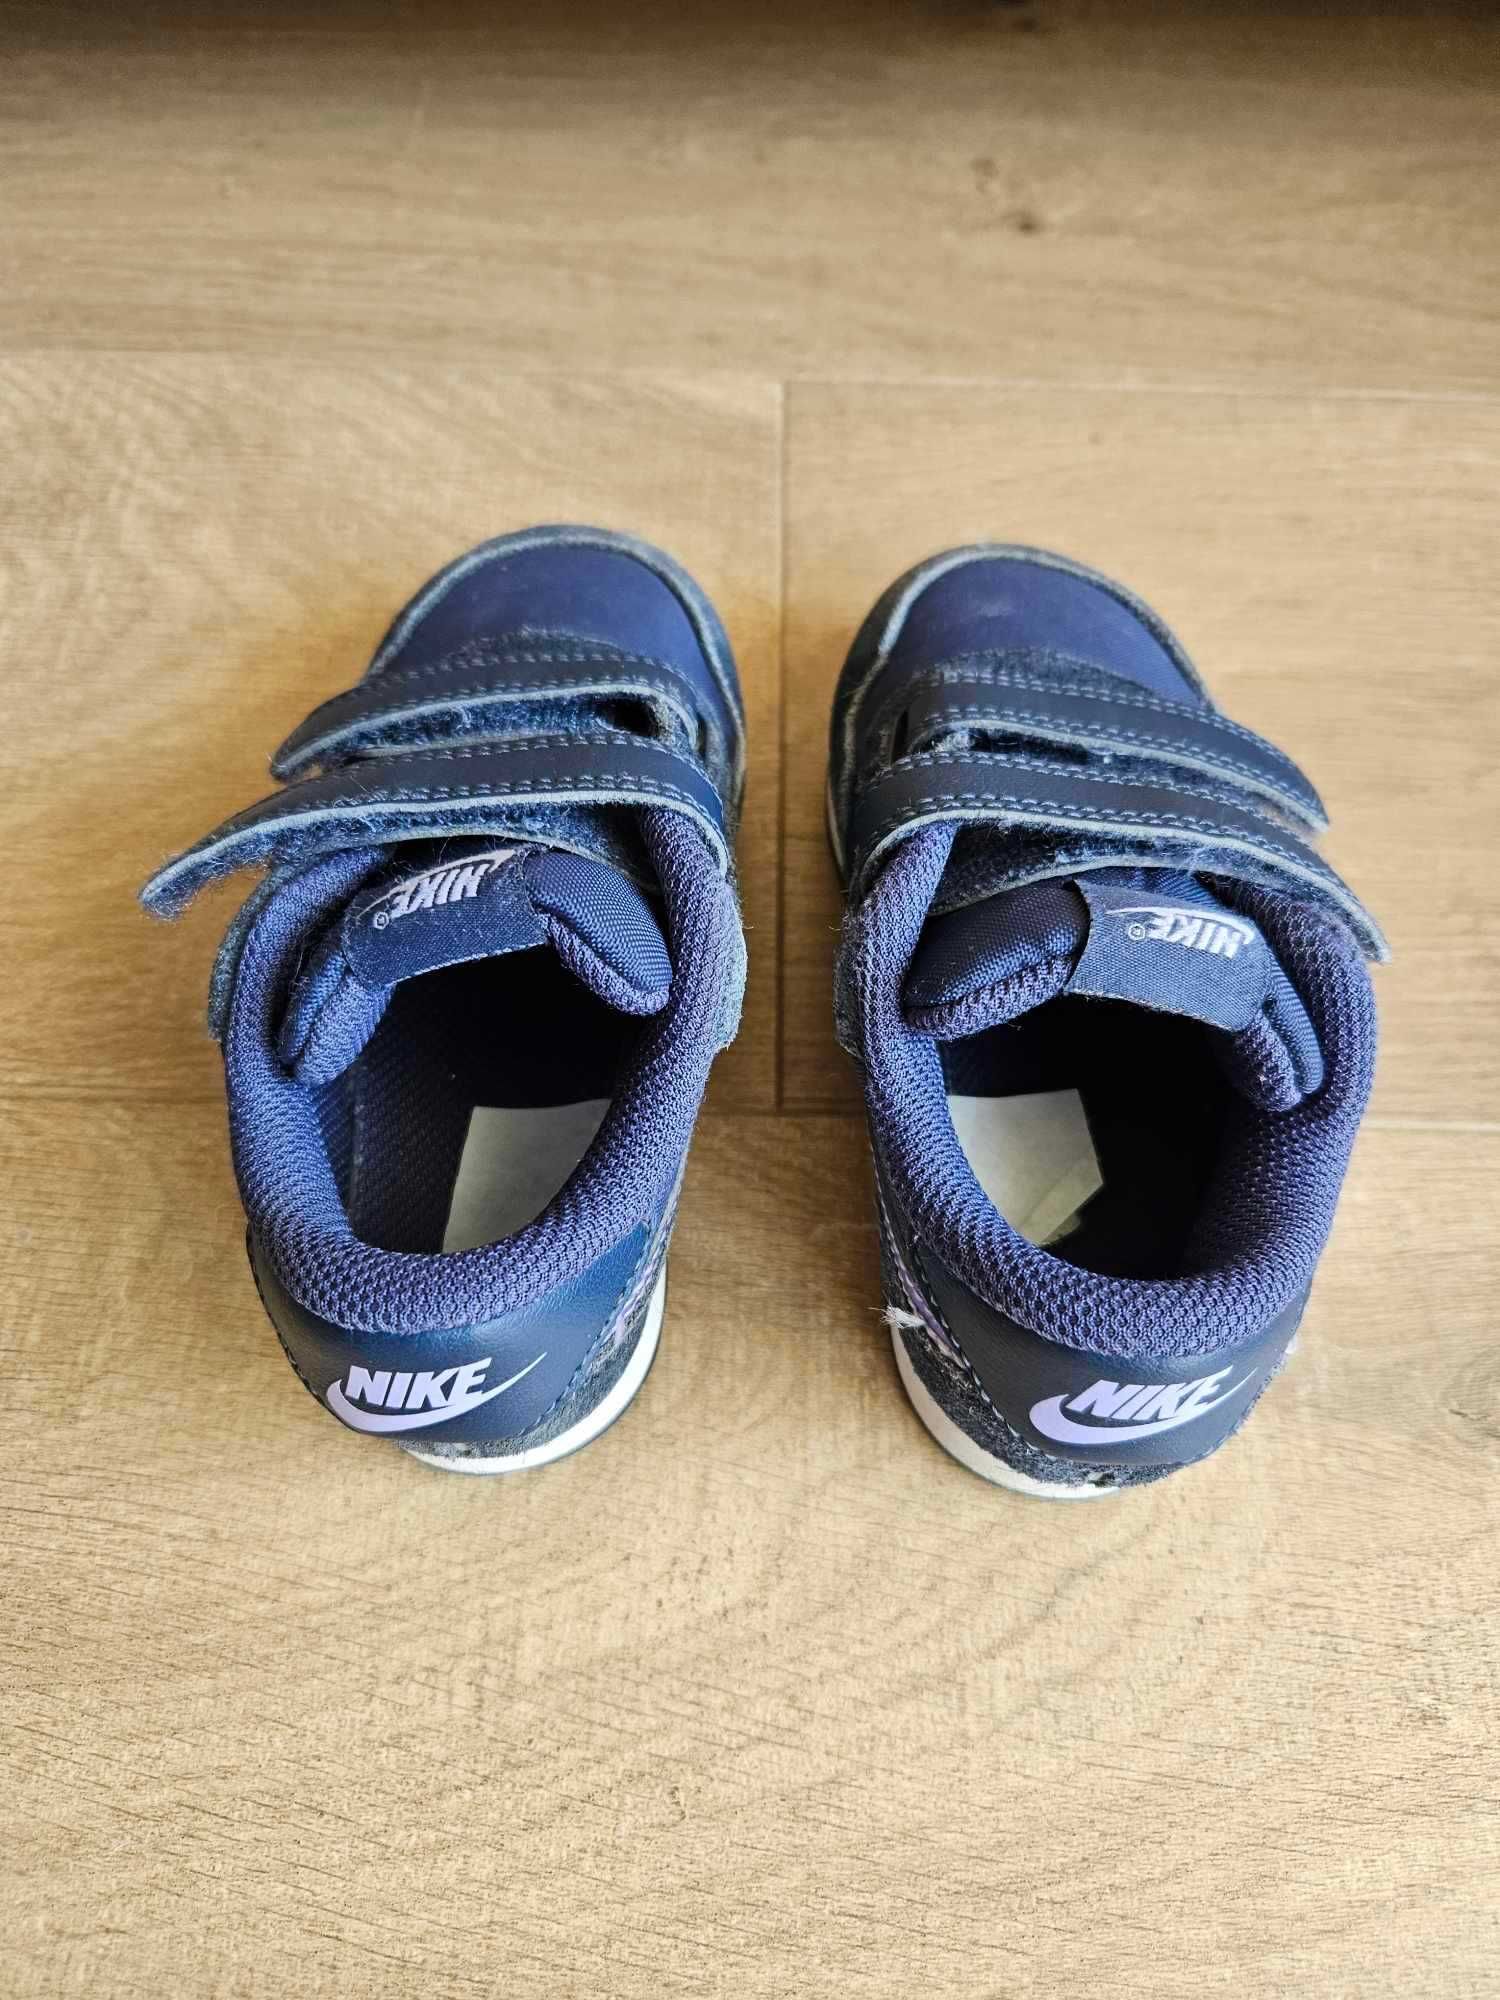 Buty dziecięce Nike adidasy rozm. 25